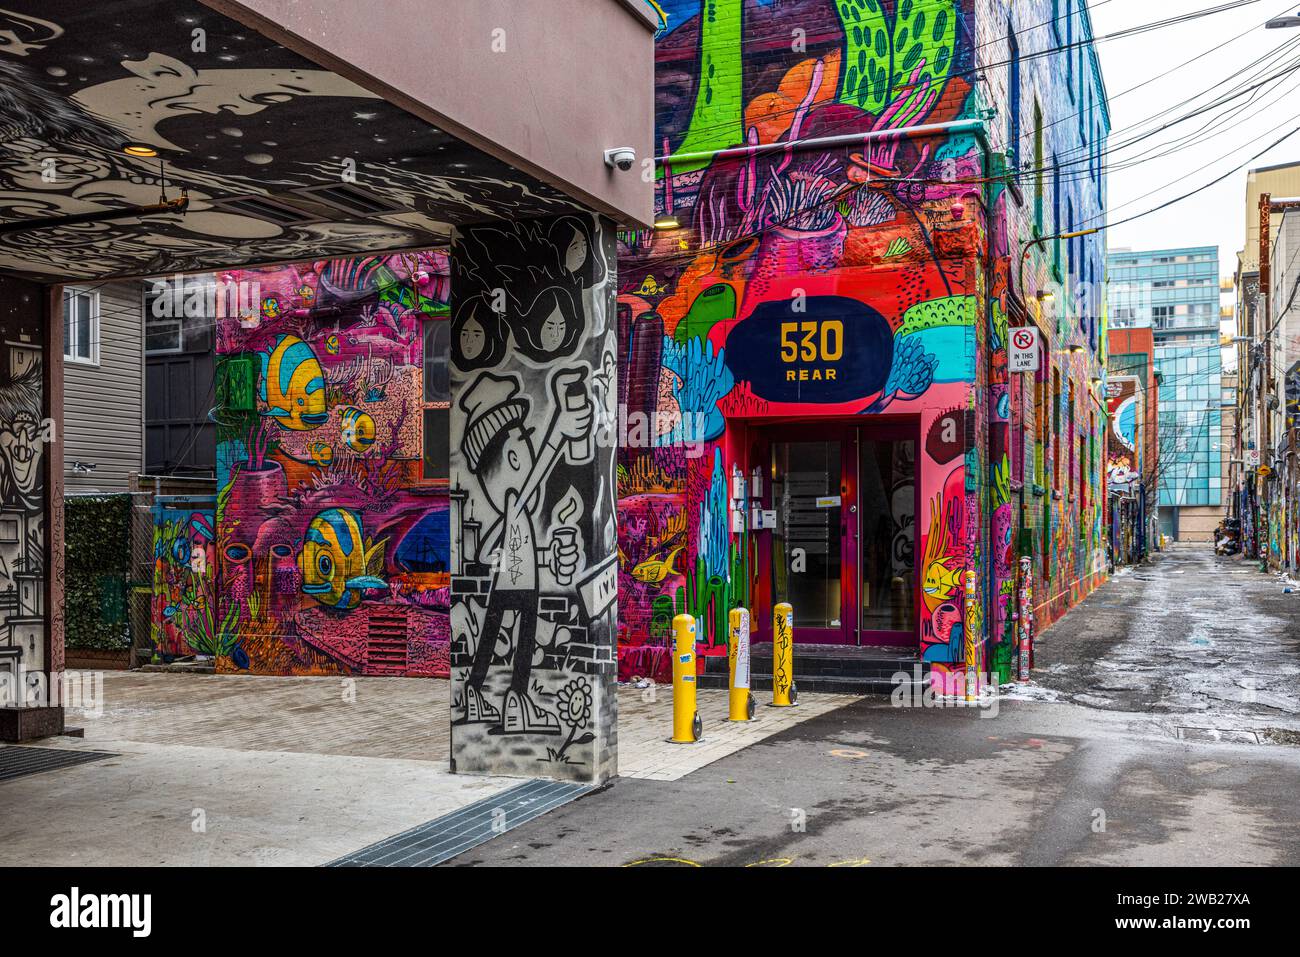 Graffiti Alley, noto anche come Rush Lane, è una gemma nascosta nel quartiere della moda di Toronto. E' un vicolo stretto fiancheggiato da murales colorati e strade Foto Stock